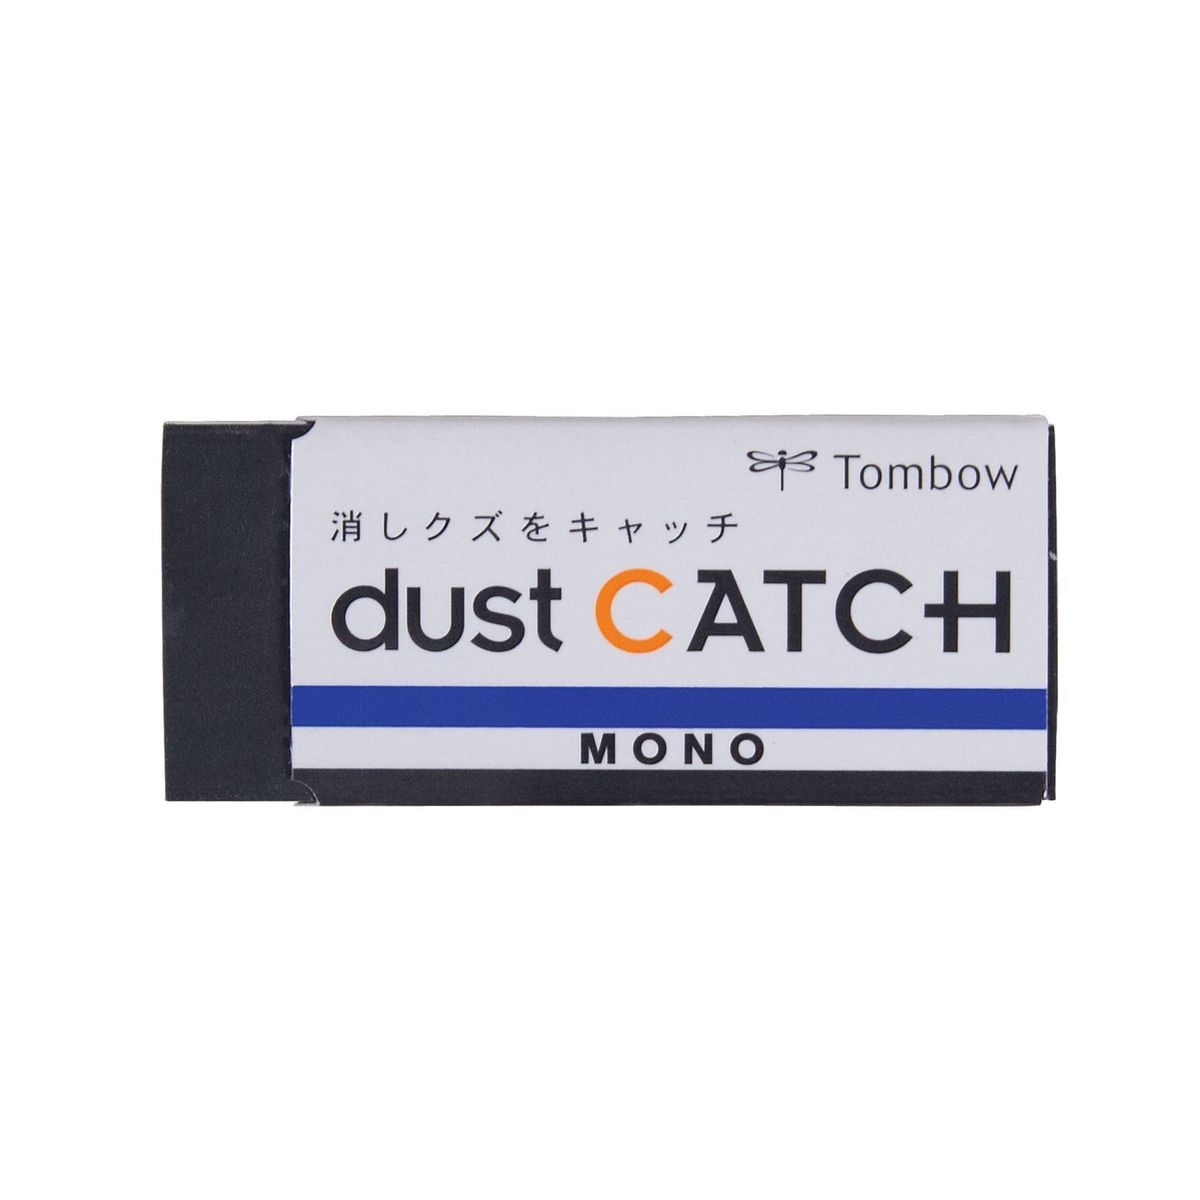 Borracha Tombow Mono Dust Catch